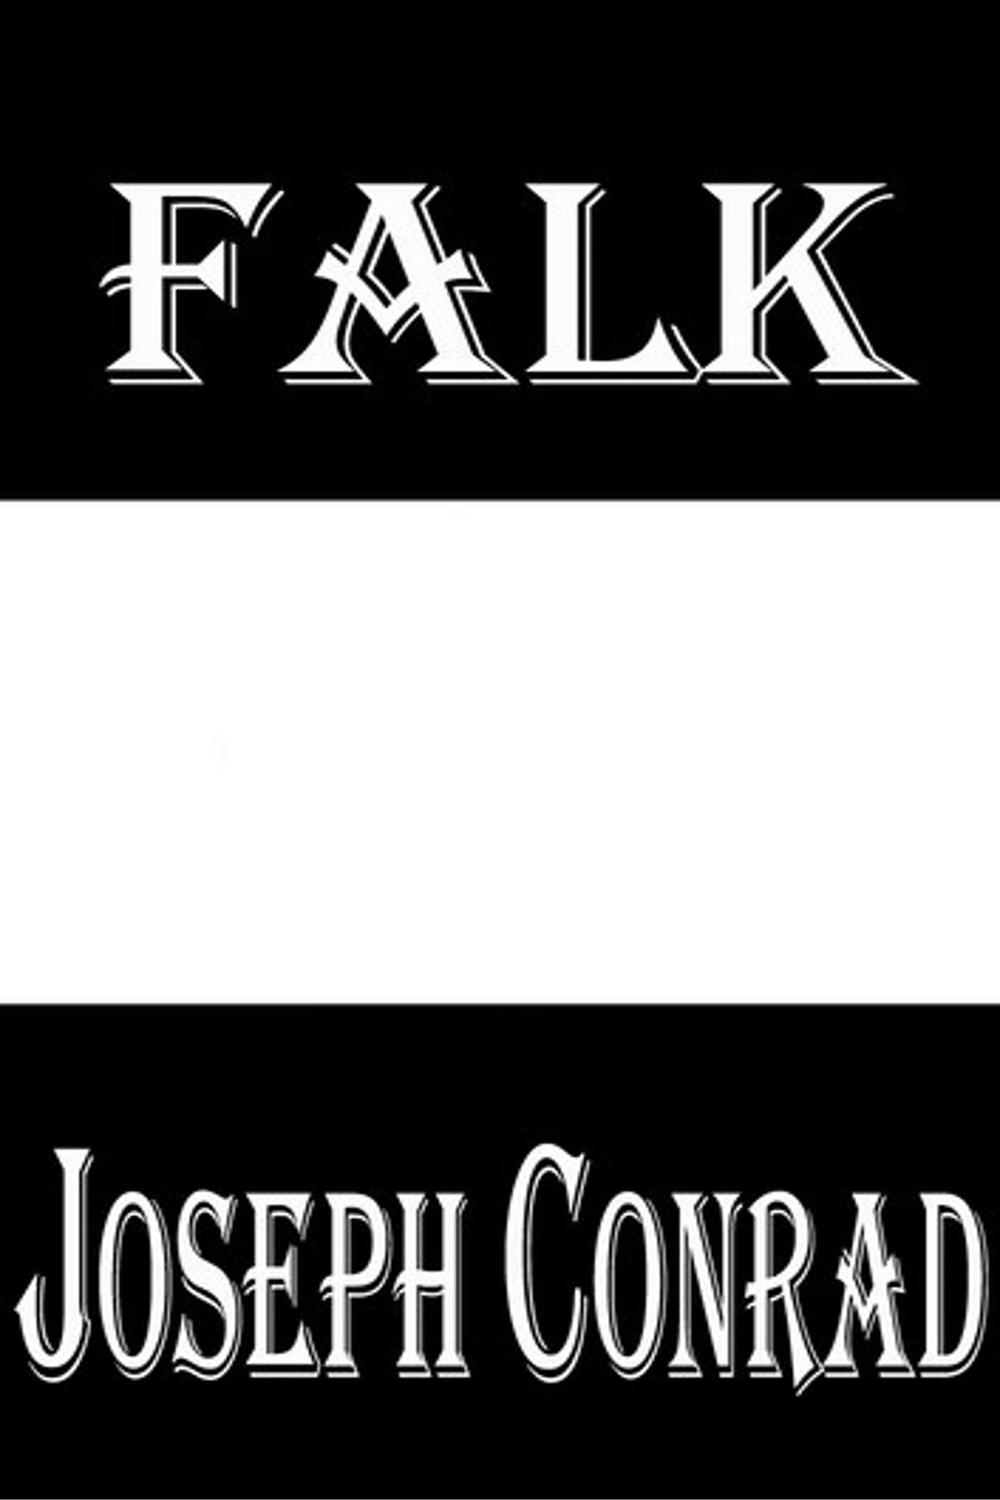 Falk - Joseph Conrad,,